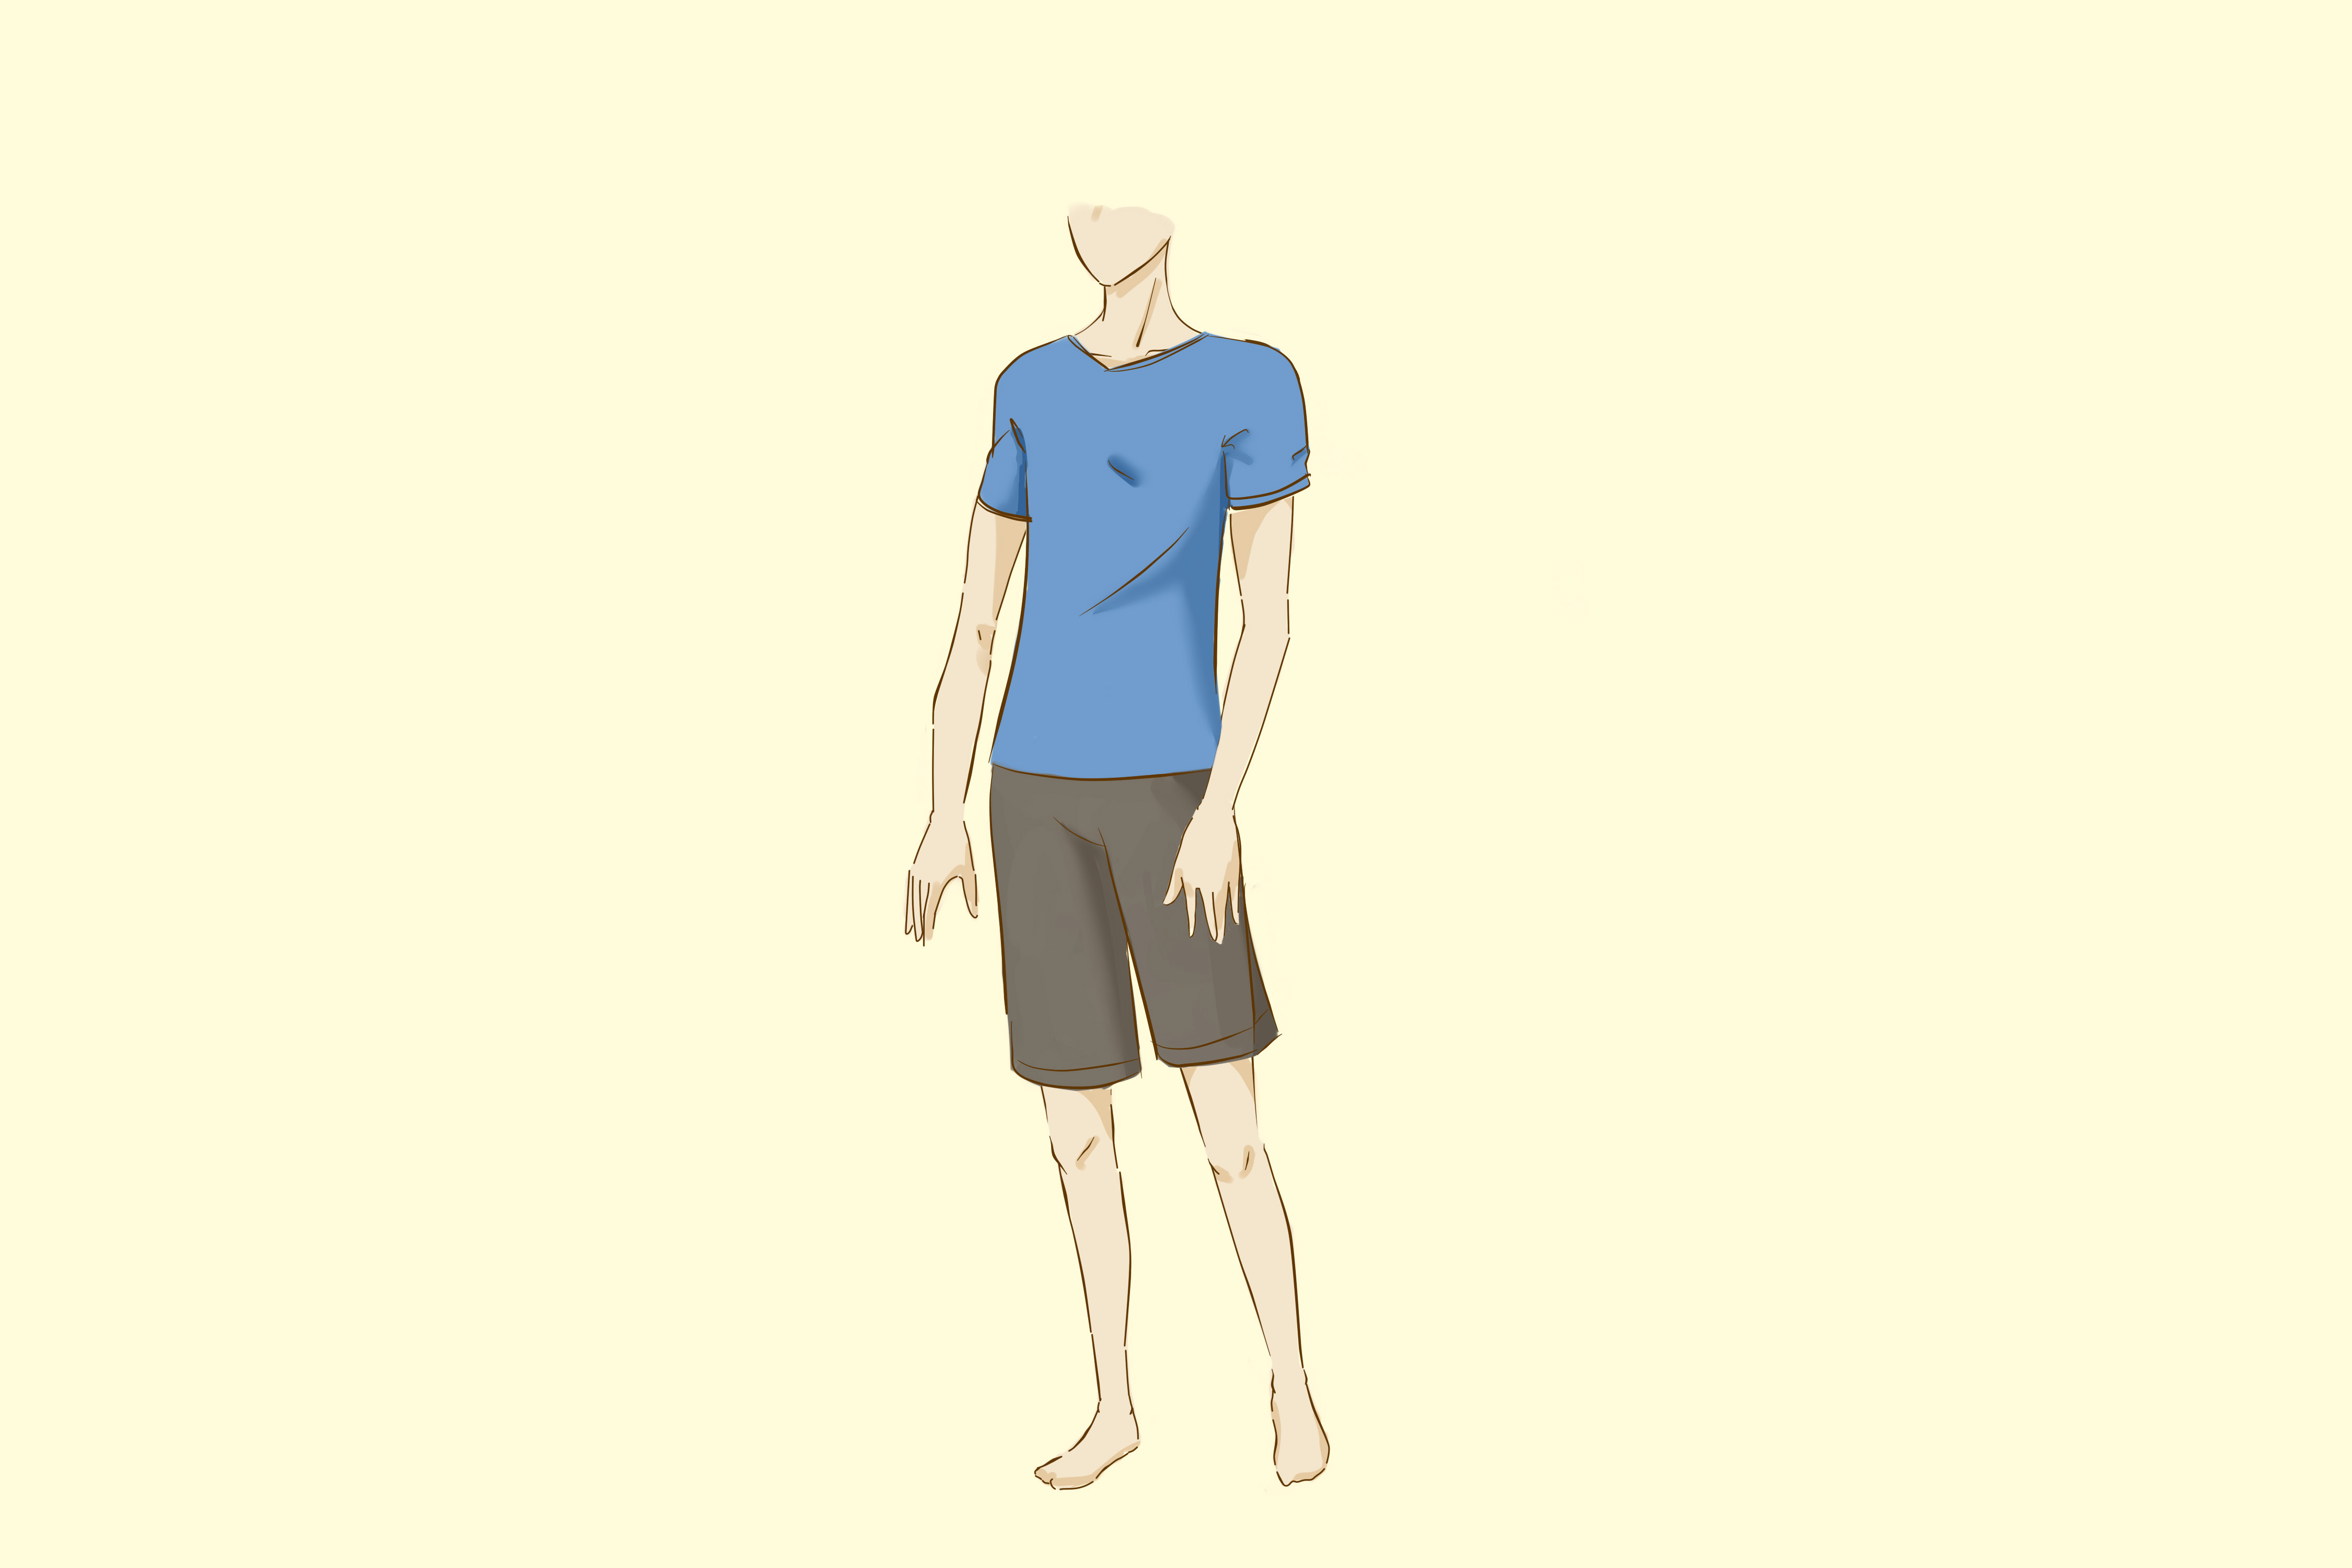 Drawing Anime Boy Body 5 Ways to Draw An Anime Body Wikihow